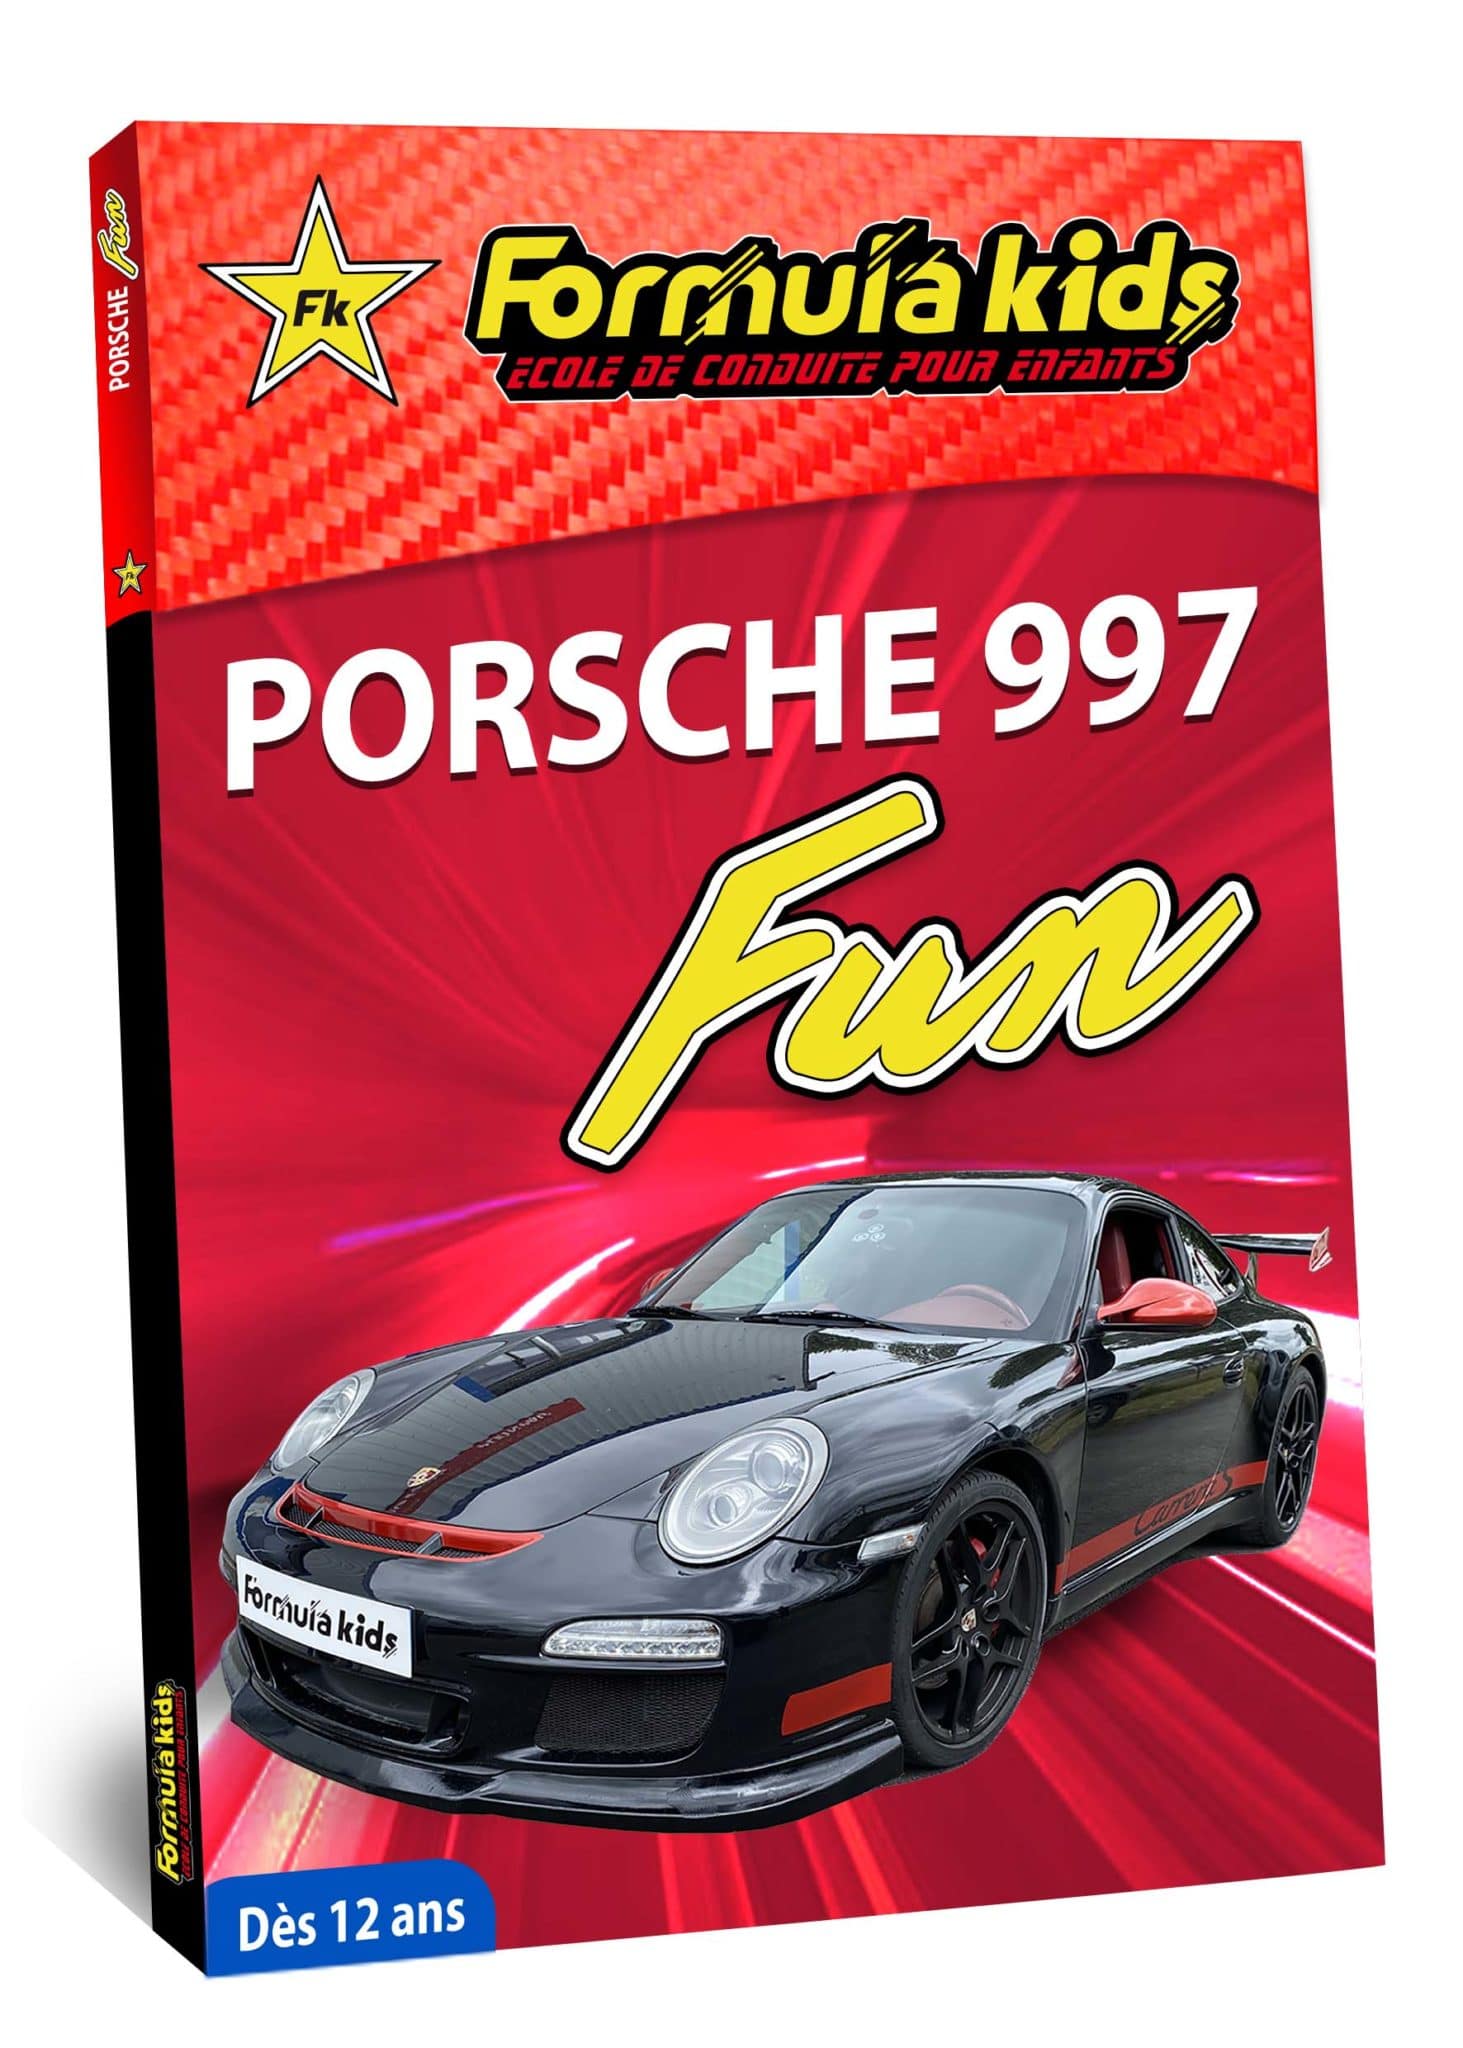 Porsche Fun - Conduire une Porsche dès 12 ans - Formula Kids - Stage de conduite enfant - Stage de pilotage sur As'Phalte - Stage Junior - Conduire une TT dès 7 ans - Formula Kids - Stage de conduite enfant - Stage de pilotage sur As'Phalte - Stage Junior - Cadeau - Idée anniversaire - Smart Box - Idée Cadeau - Loisir - Famille - Pilotage - - Pilotage GT - Pilotage enfant - Porsche 991 - Porsche 997 - Porsche Carrera 4S -